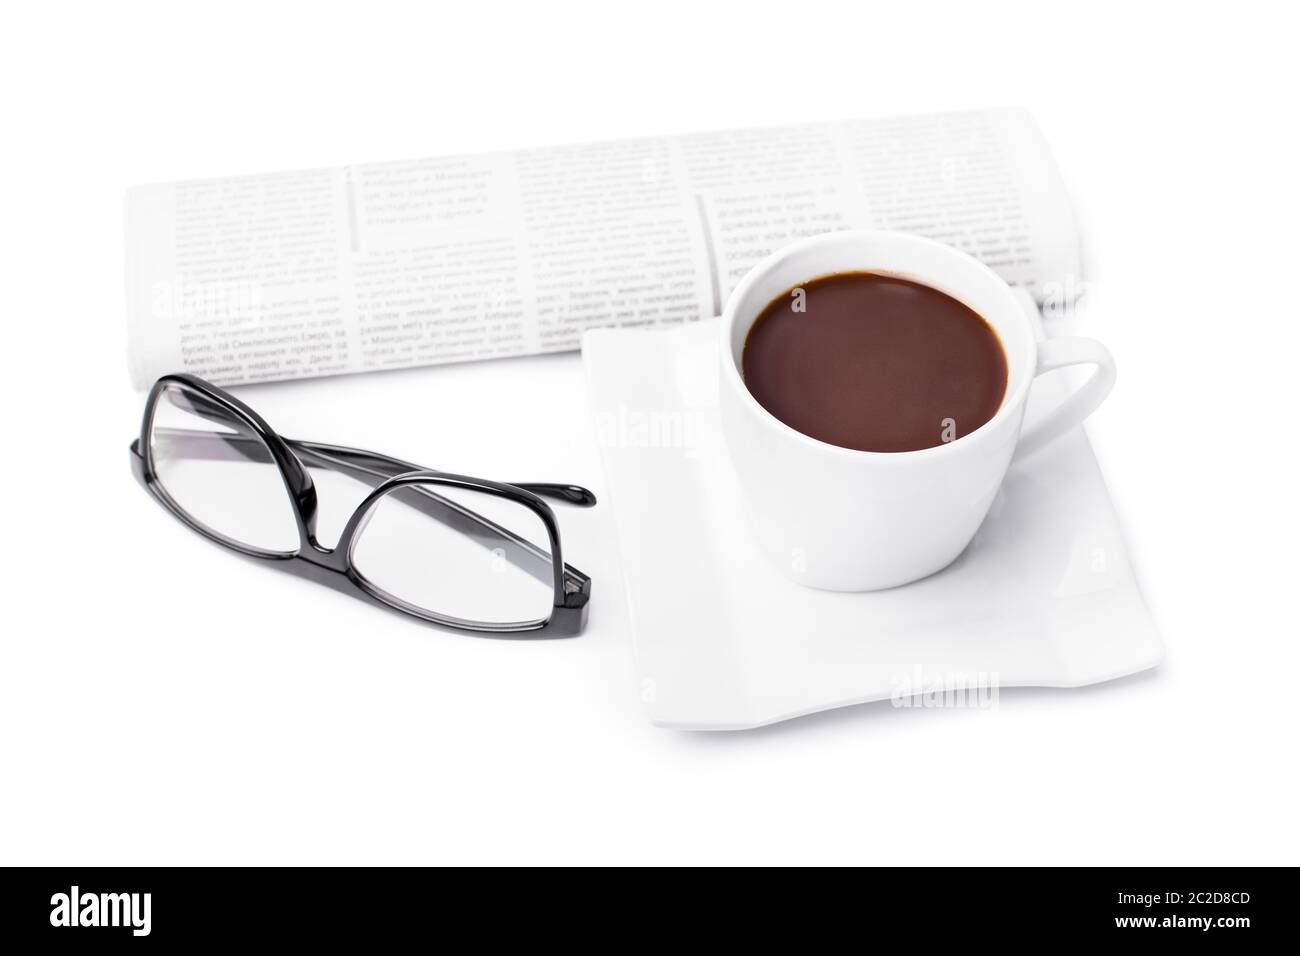 Tasse Kaffee mit einer zusammengerollten Zeitung und Gläser, auf weißem Hintergrund. Meine morgendliche Routine. Stockfoto